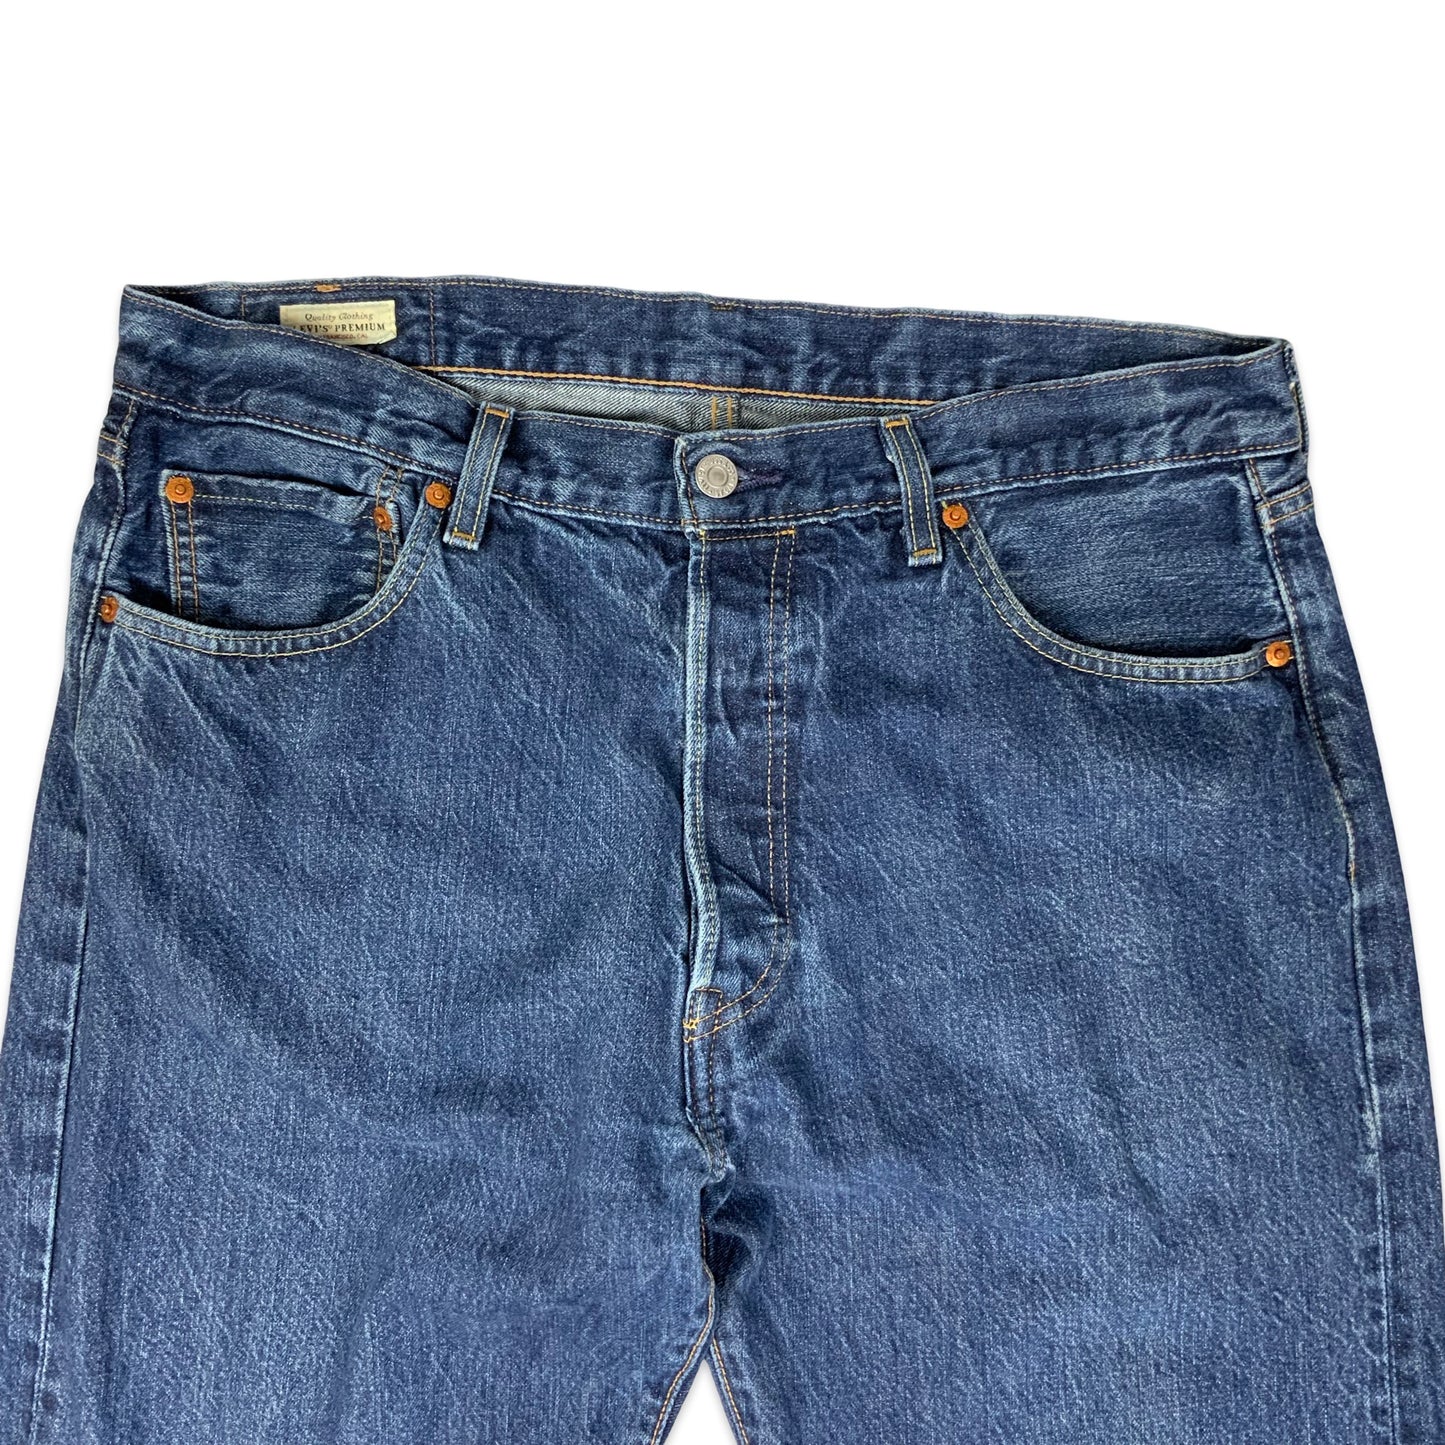 Vintage 501 Levis Dark Denim Jeans W36 L34